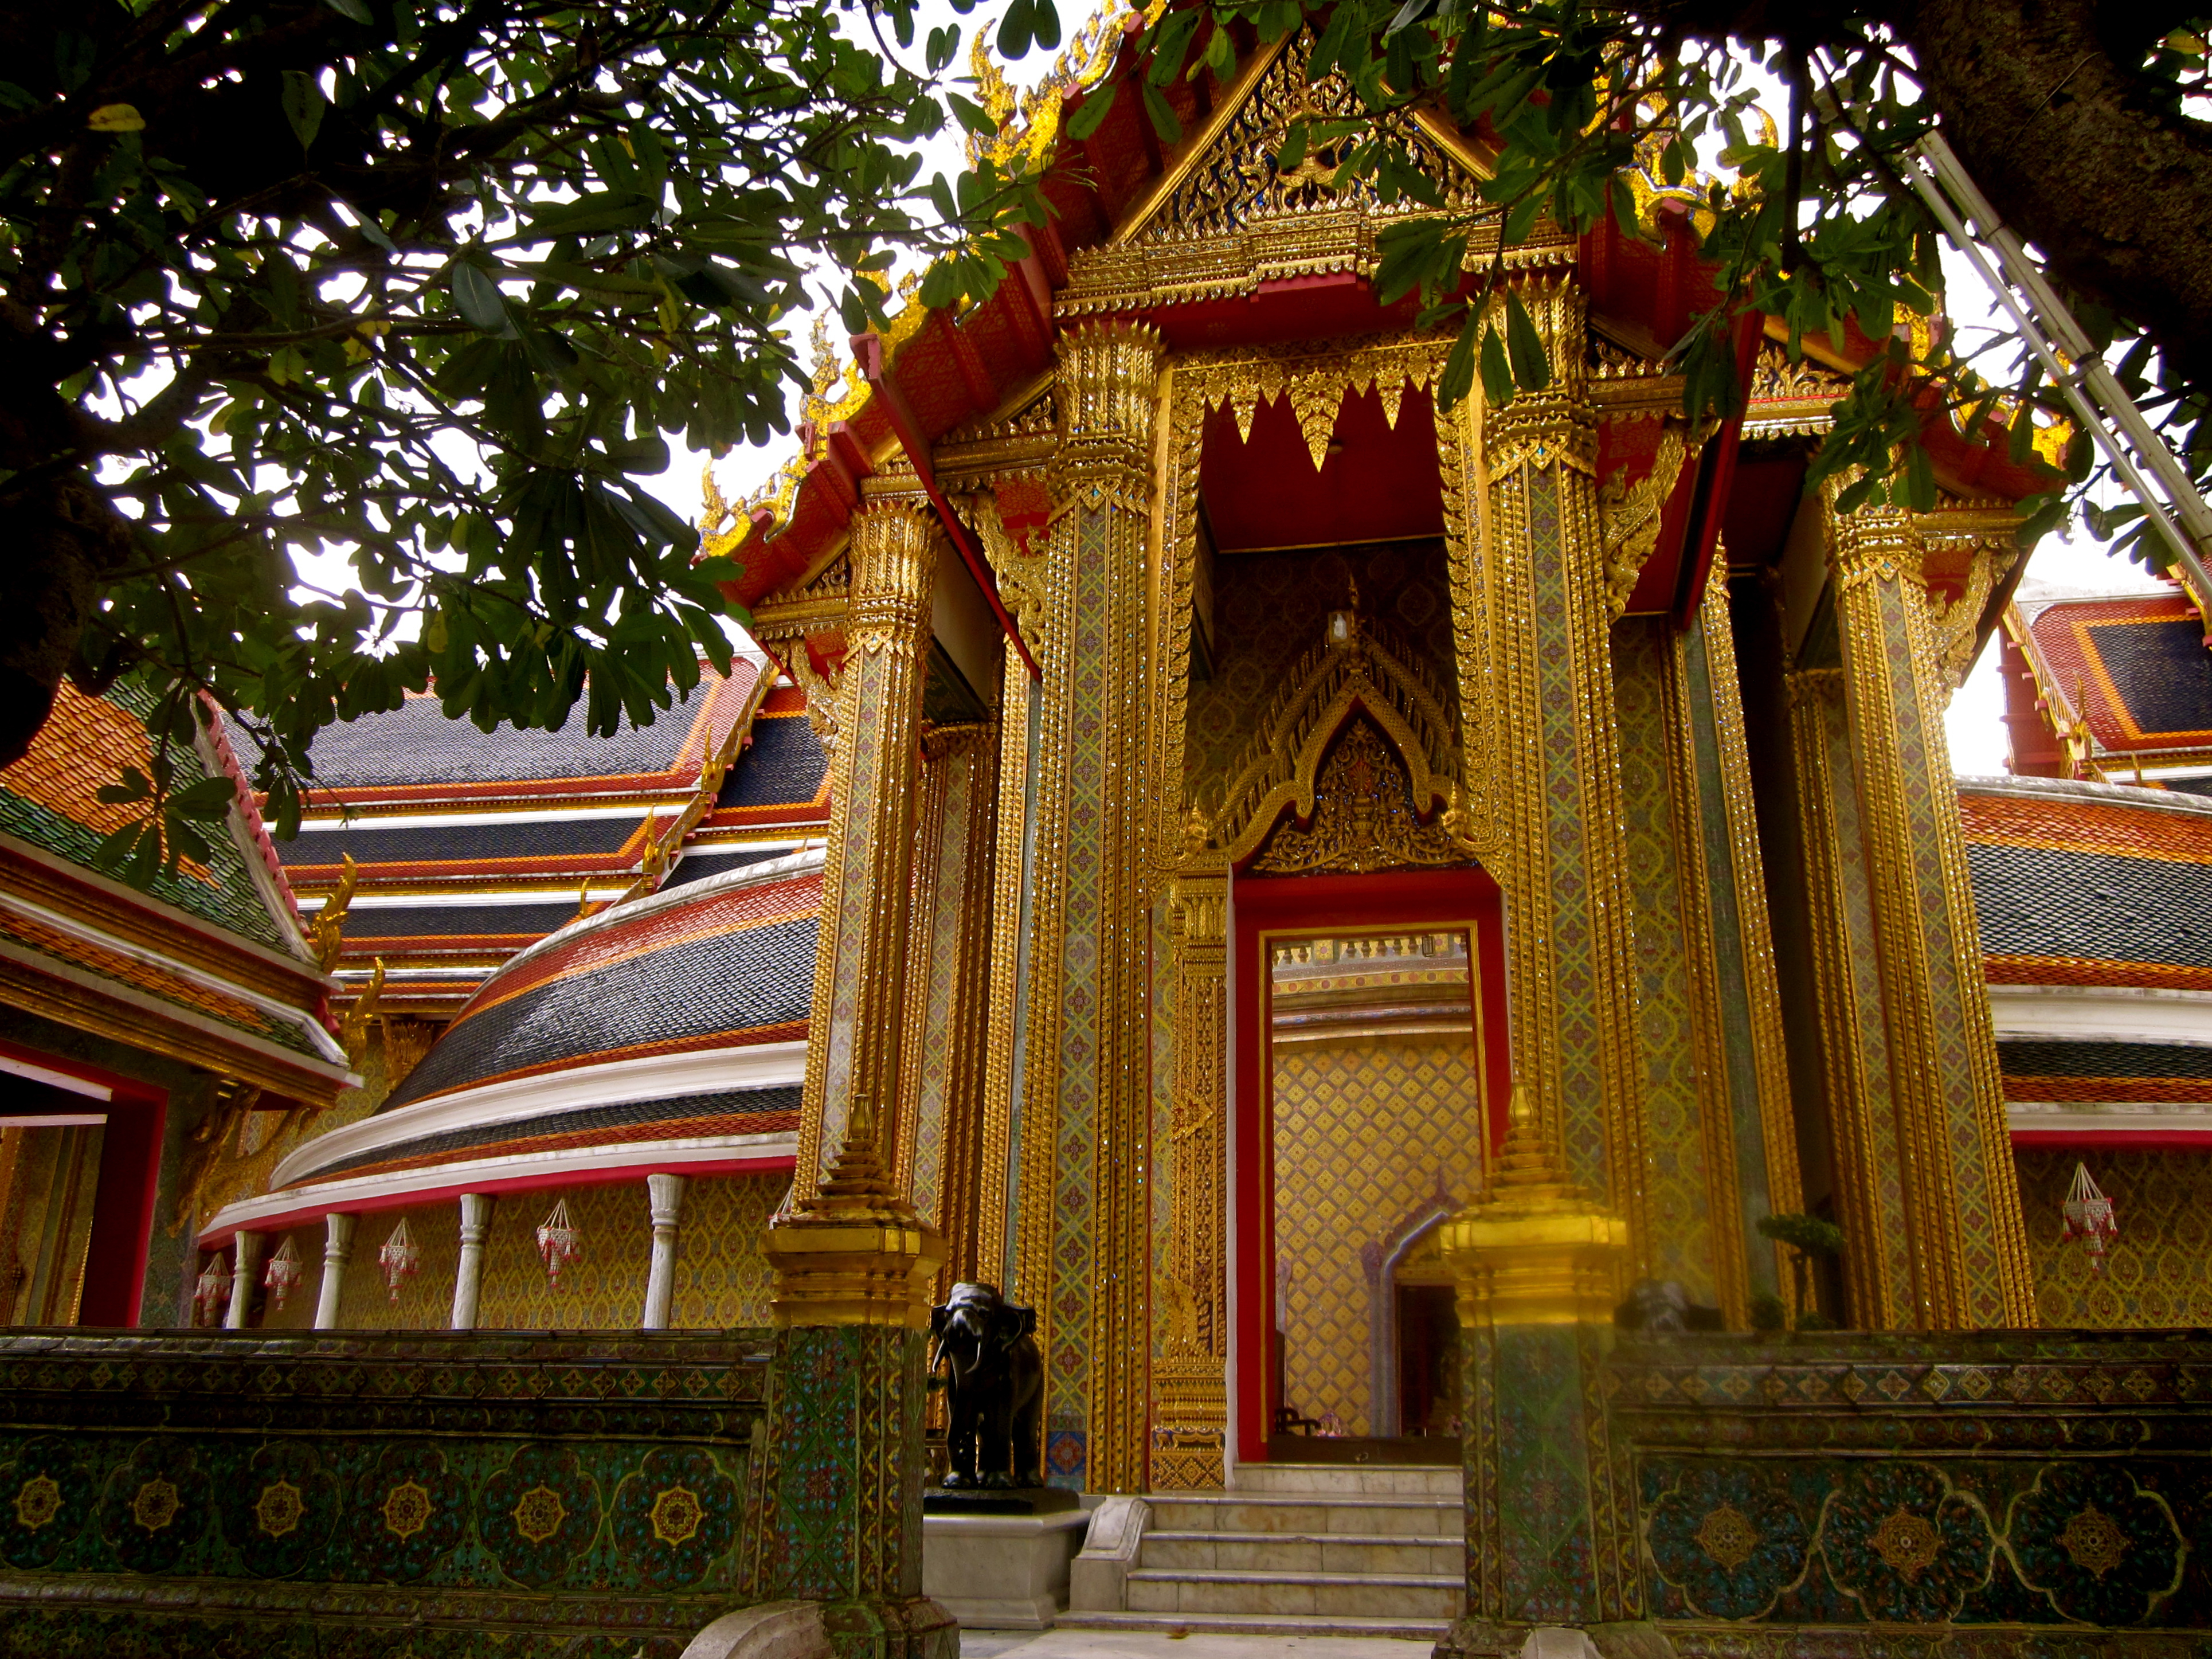 Бангкок камбоджа. Храмы Бангкока. Ратчабофит. 132. Ратчабопхит Бангкок. Раттанакосин (остров).